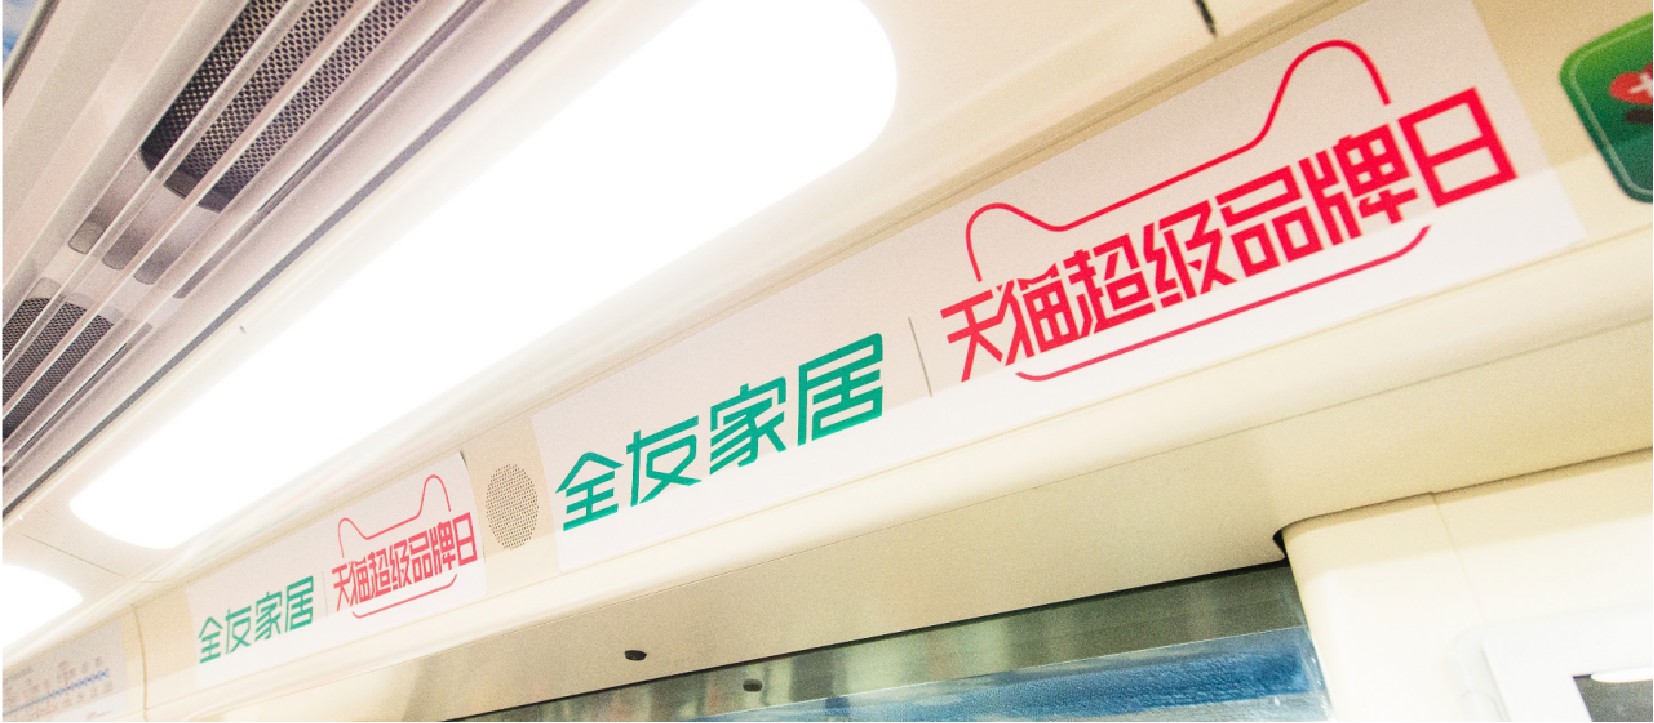 上海地铁8号线车厢广告